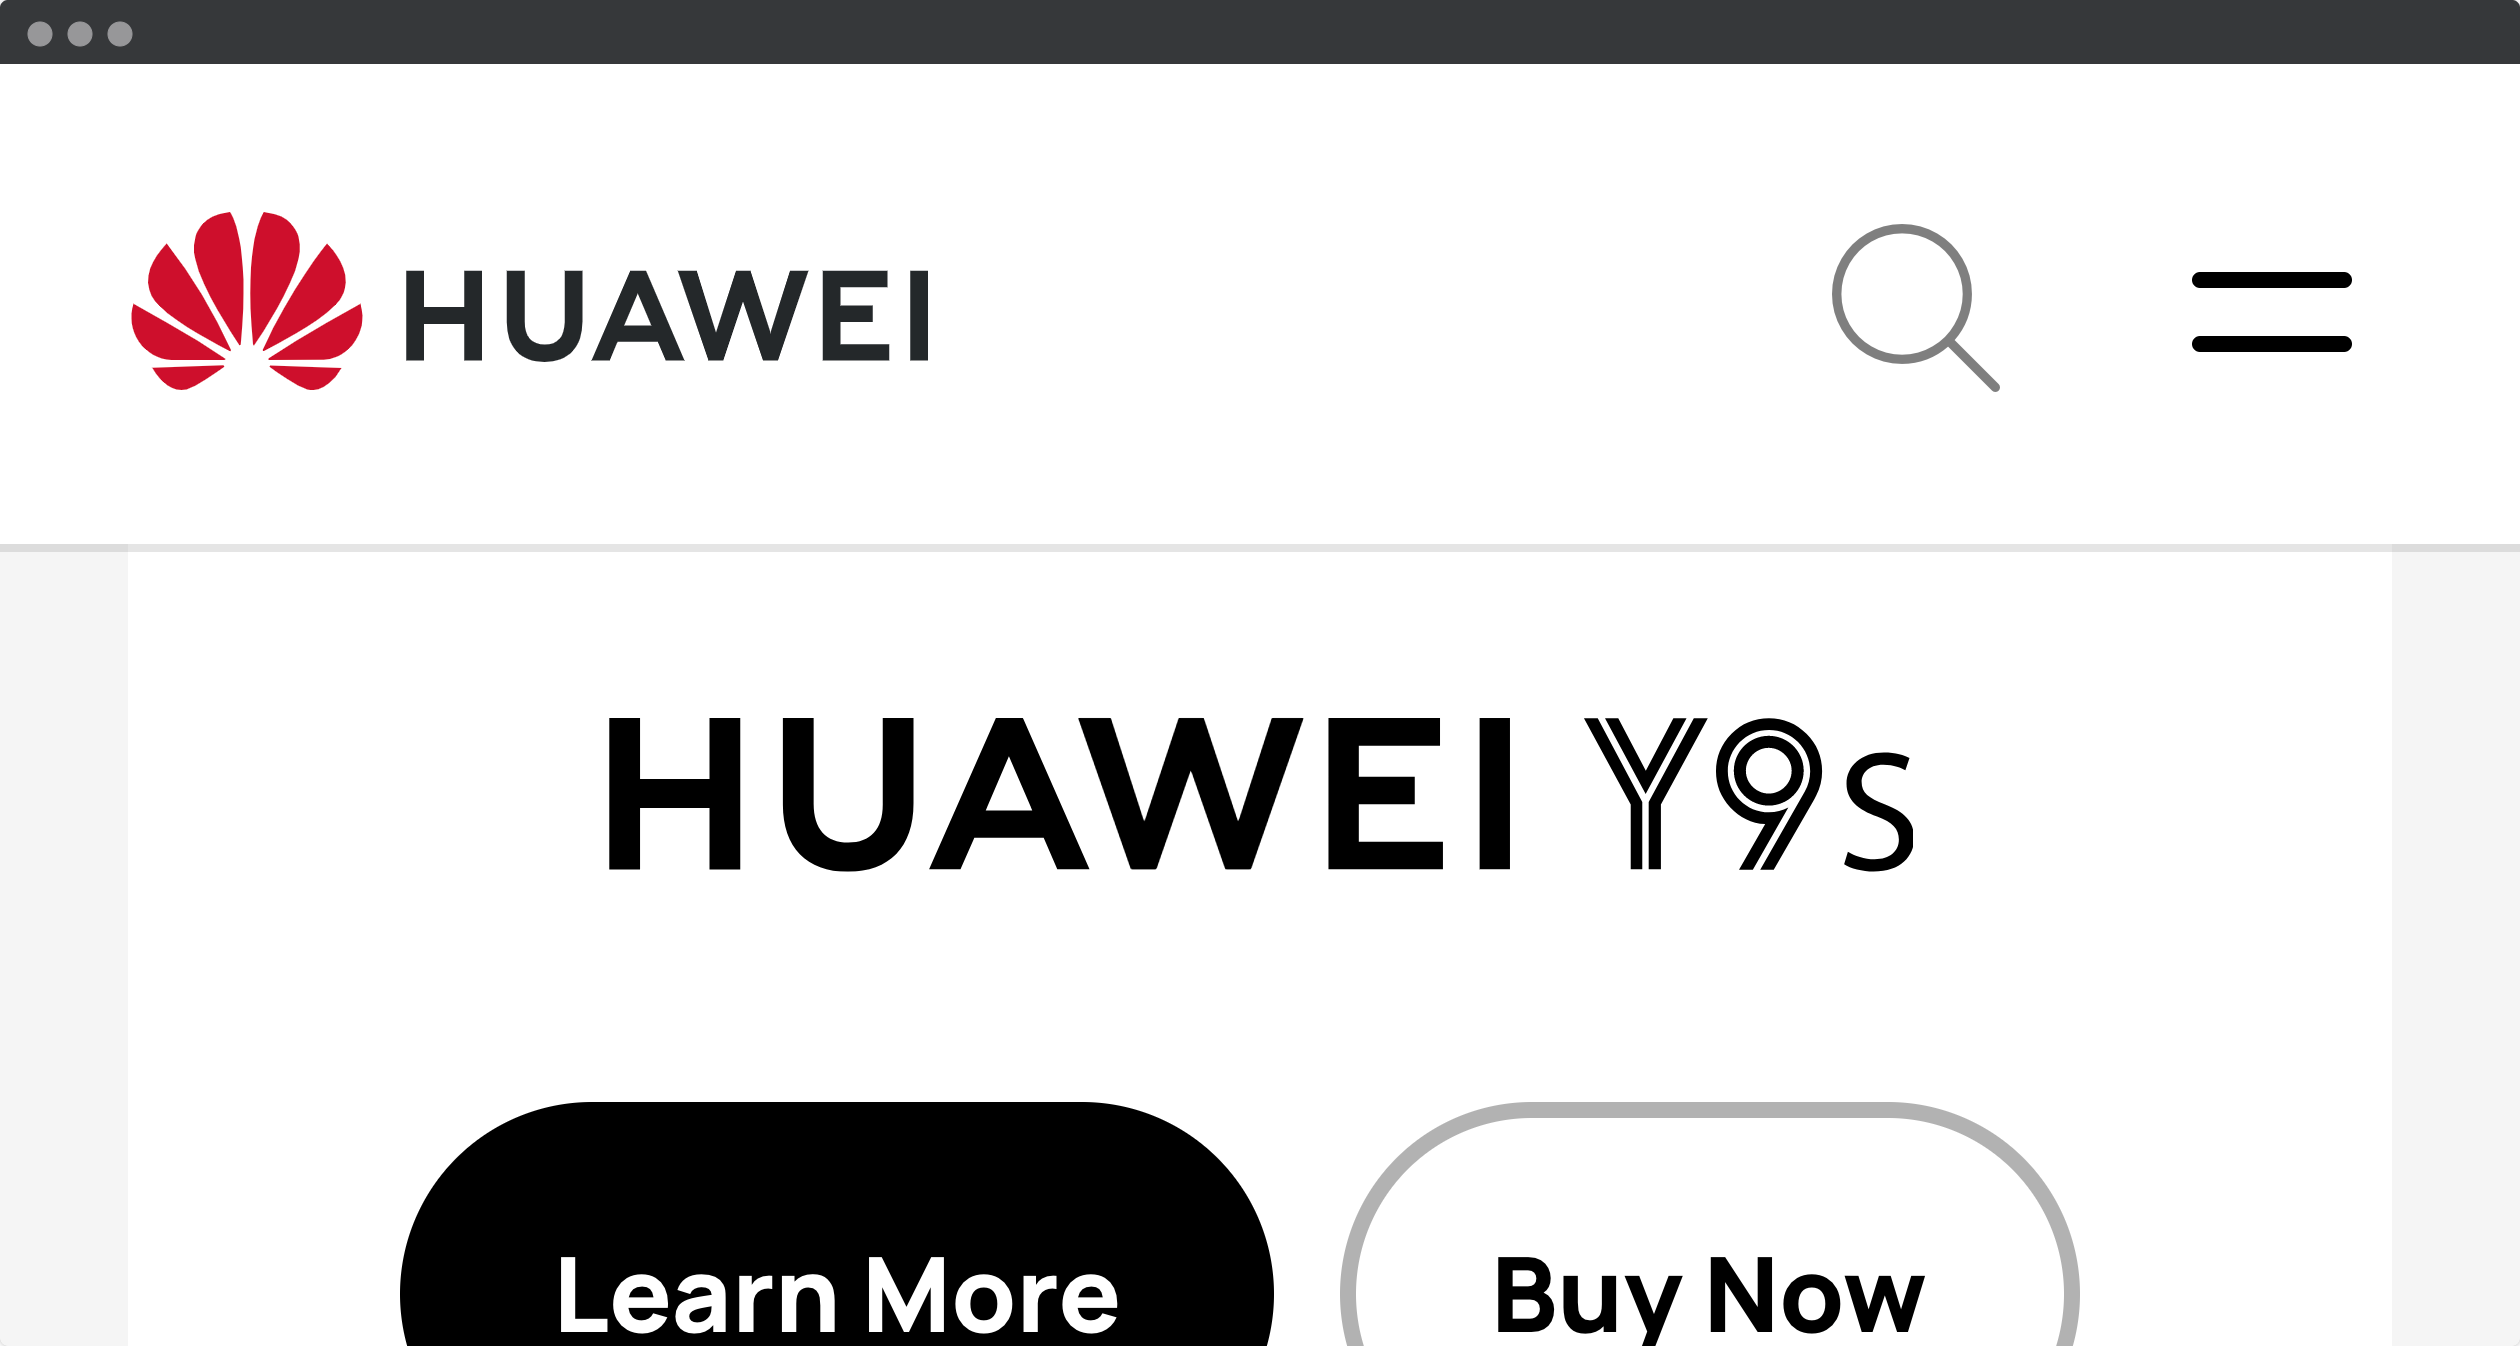 Ảnh chụp màn hình của Huawei, hiển thị phần trên cùng dính, có đủ không gian cho nội dung chính.